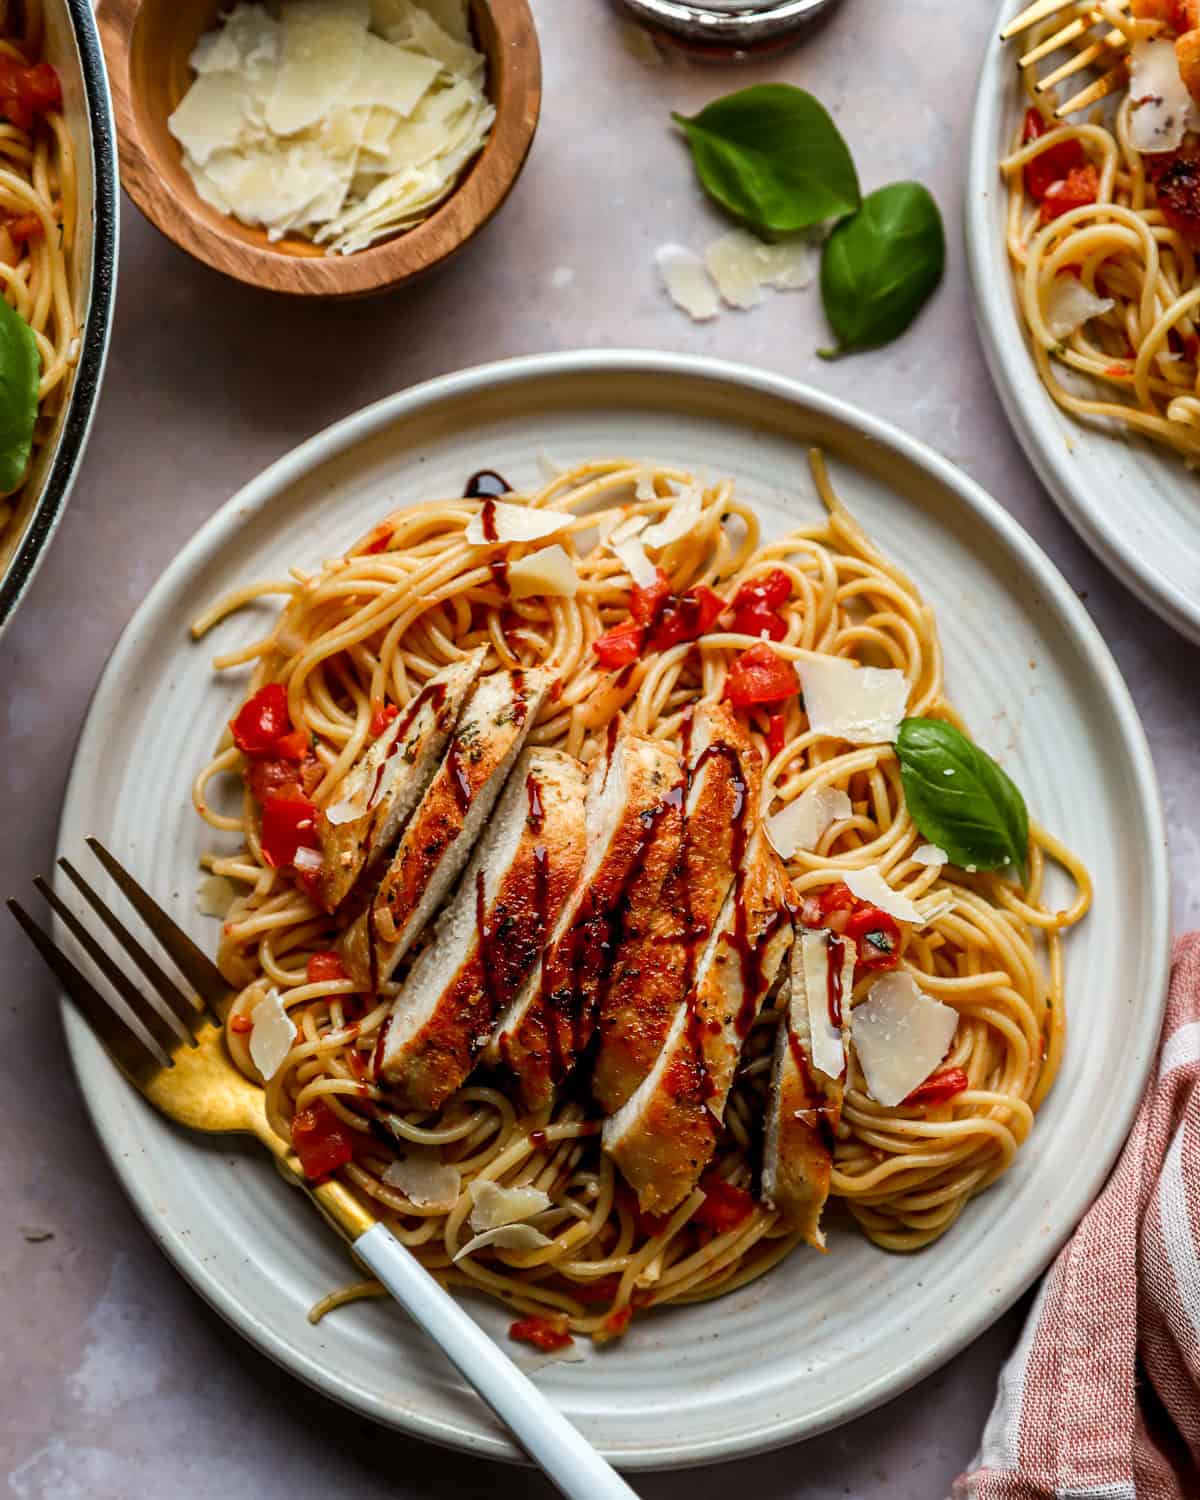 A plate of bruschetta pasta with chicken.